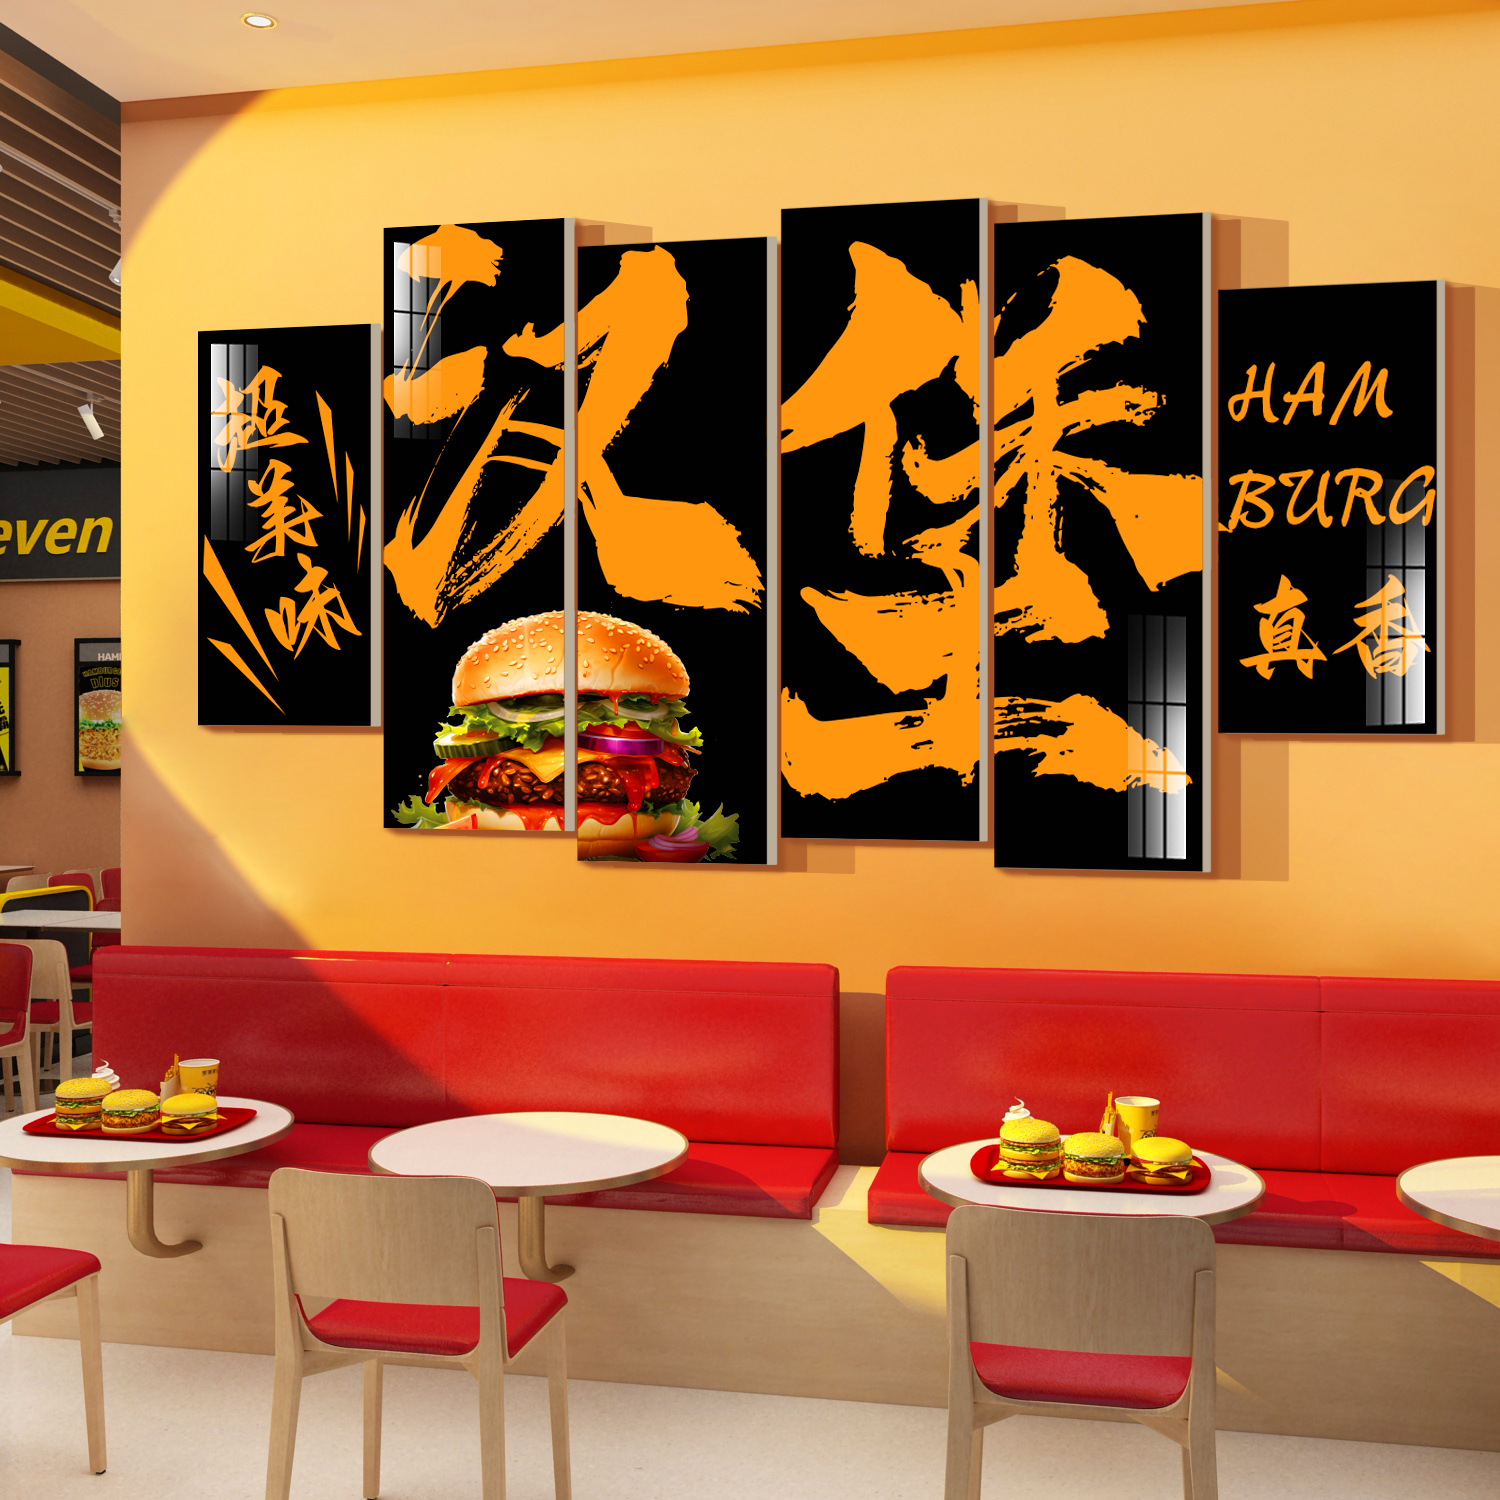 网红汉堡炸鸡店厅背景墙面门创意装饰品小吃奶茶场景布置壁纸贴画